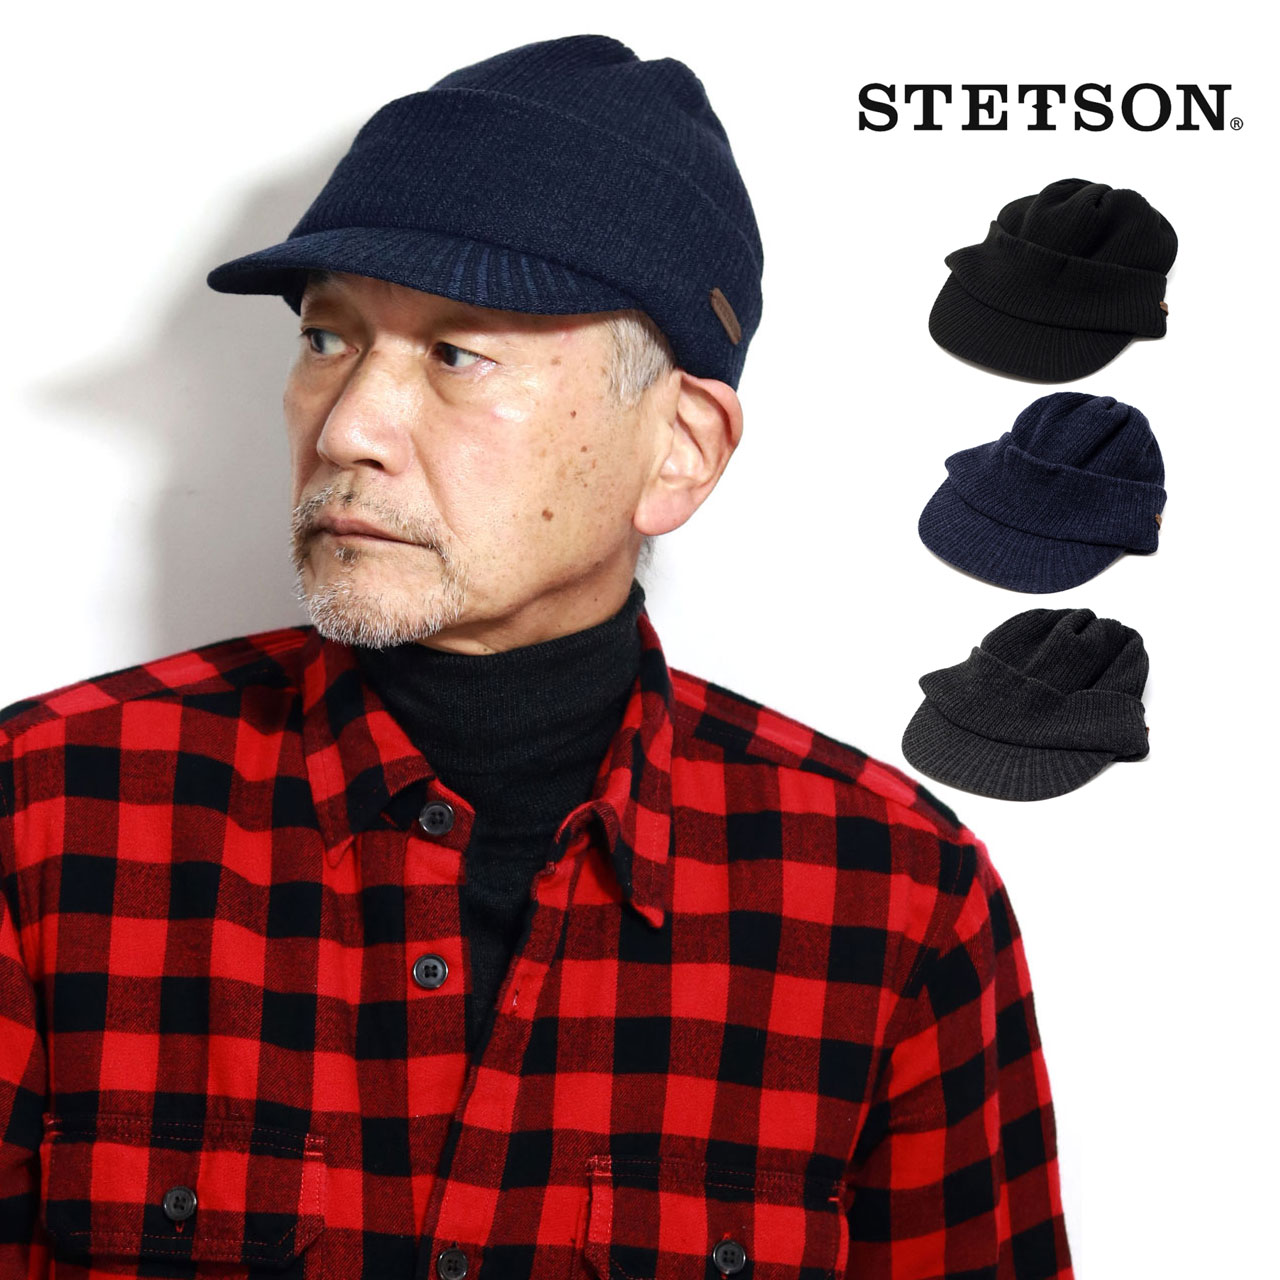 STETSON ニットキャップ メンズ ニット帽 つば付き 冬 帽子 ステットソン 紳士 ニット 暖かい 防寒 帽子 サーモキャップ コアブリット  プレゼント